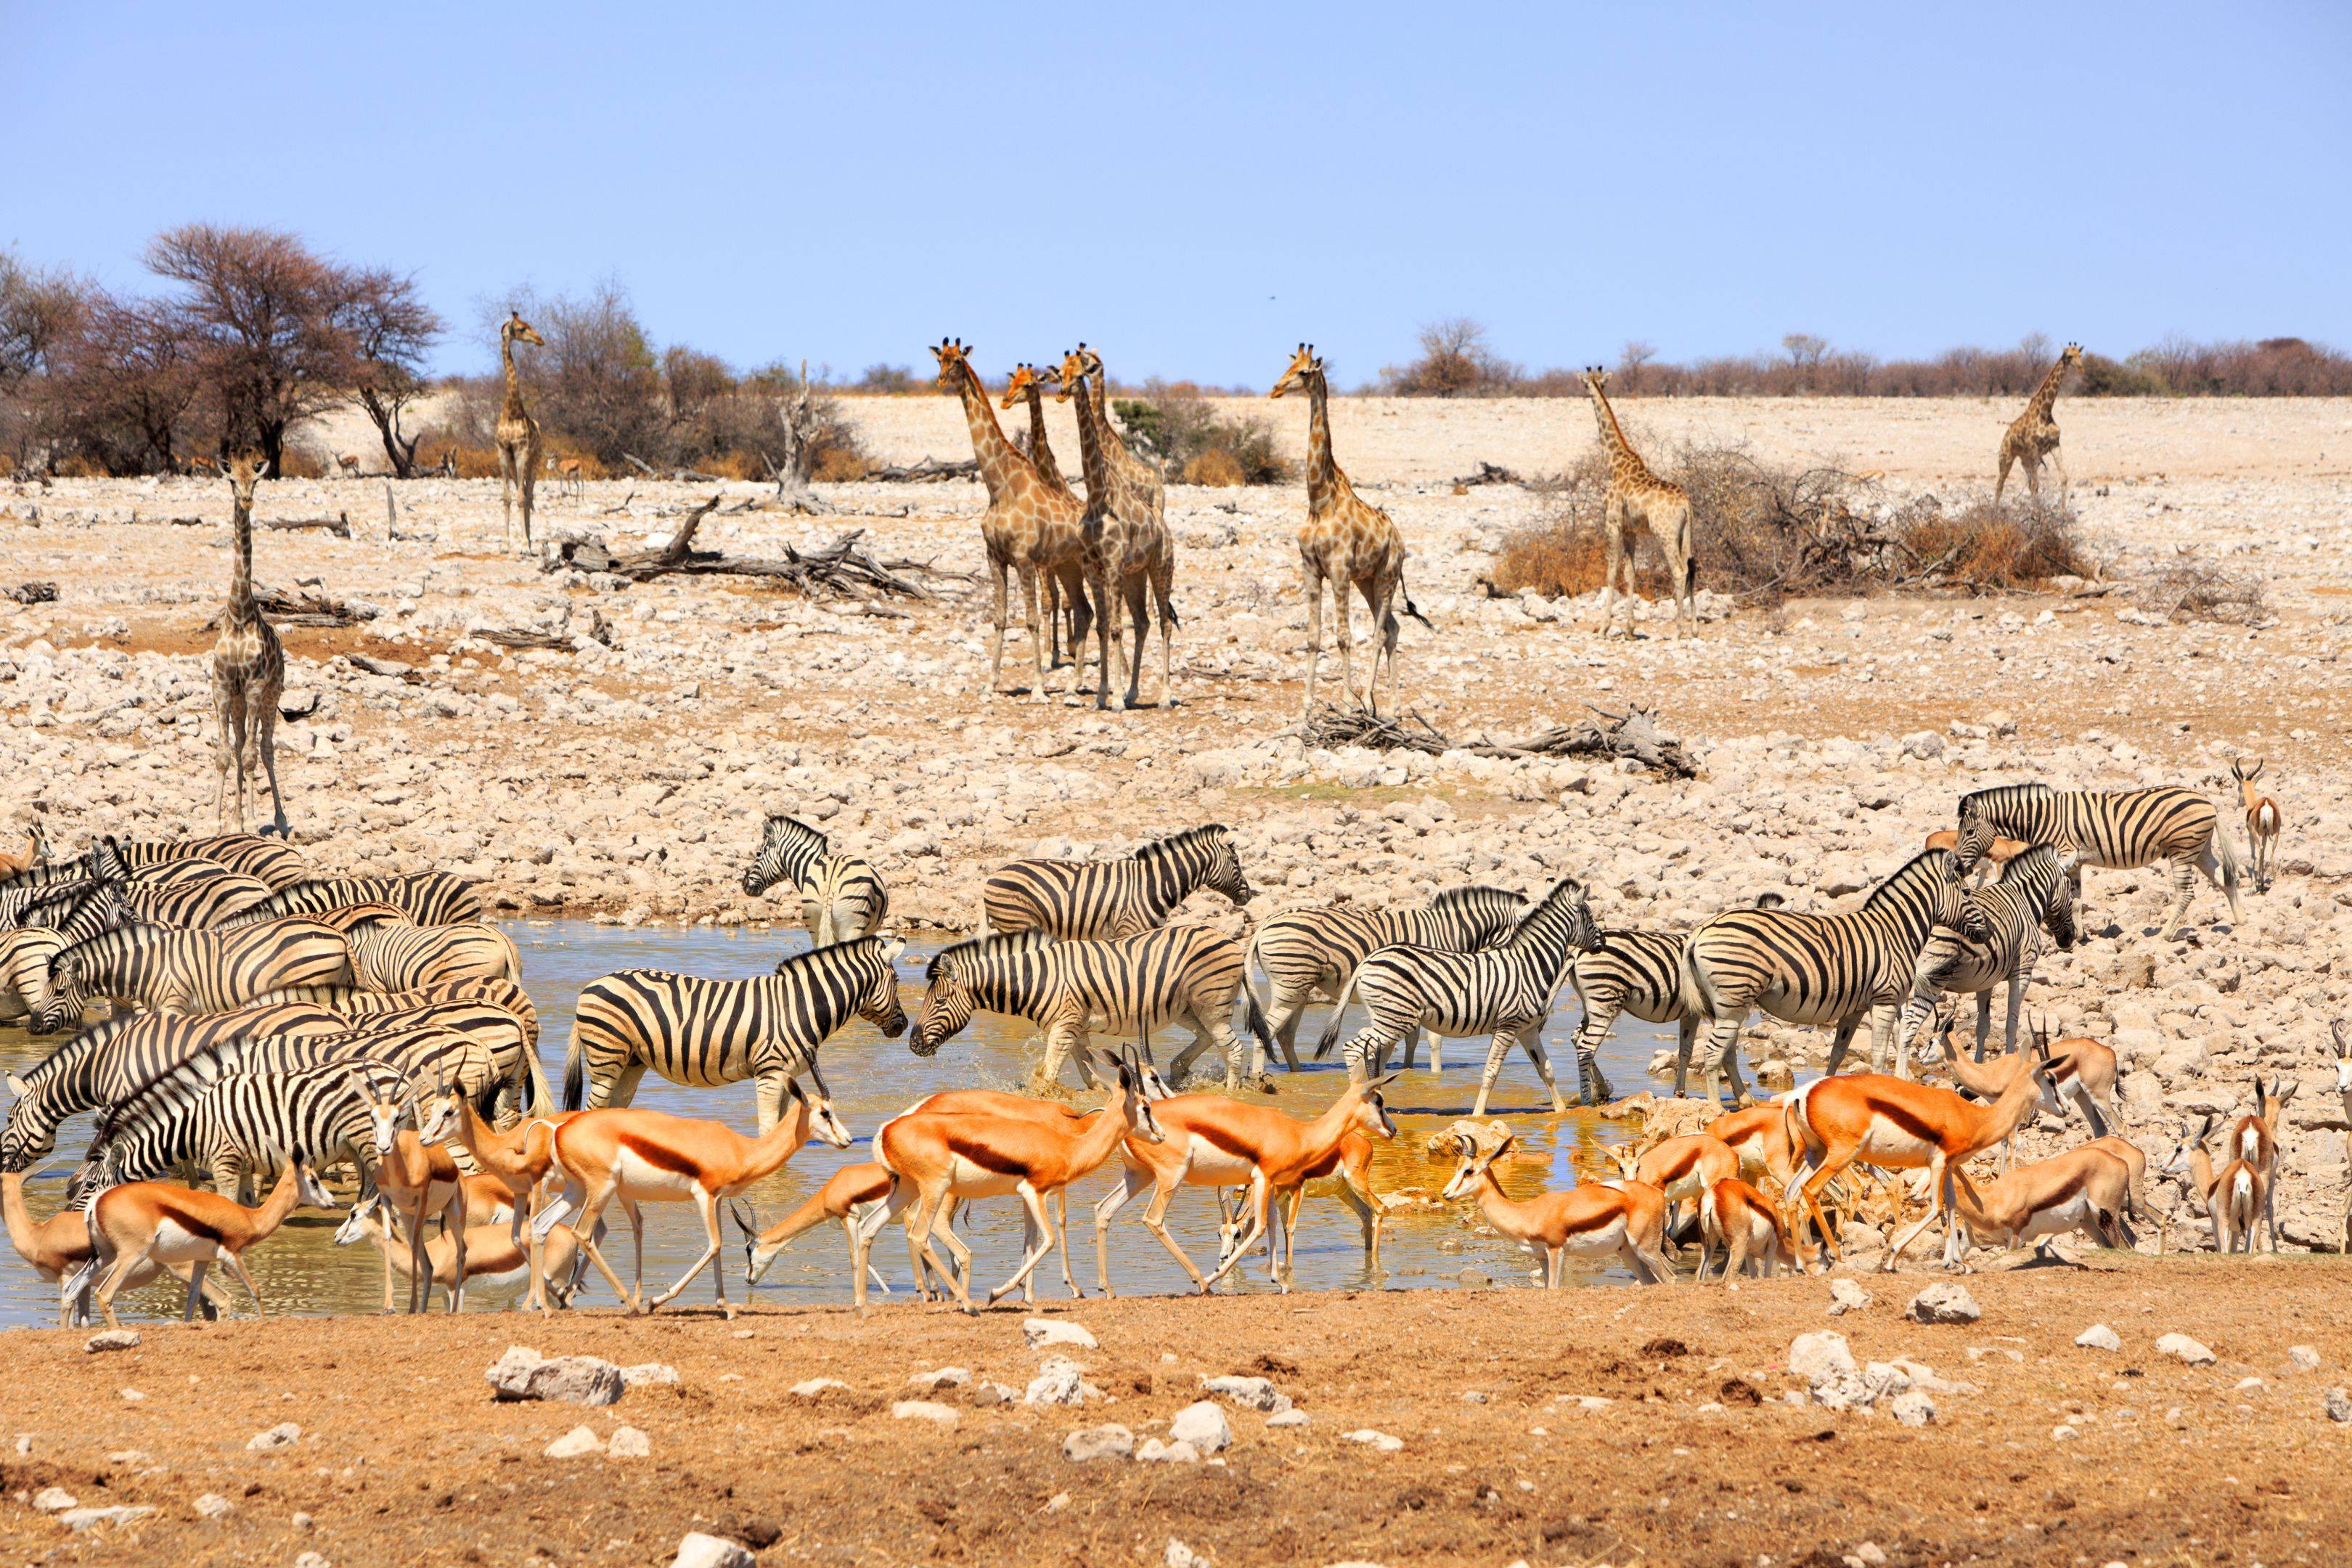 Wunderwelt Etosha National Park 